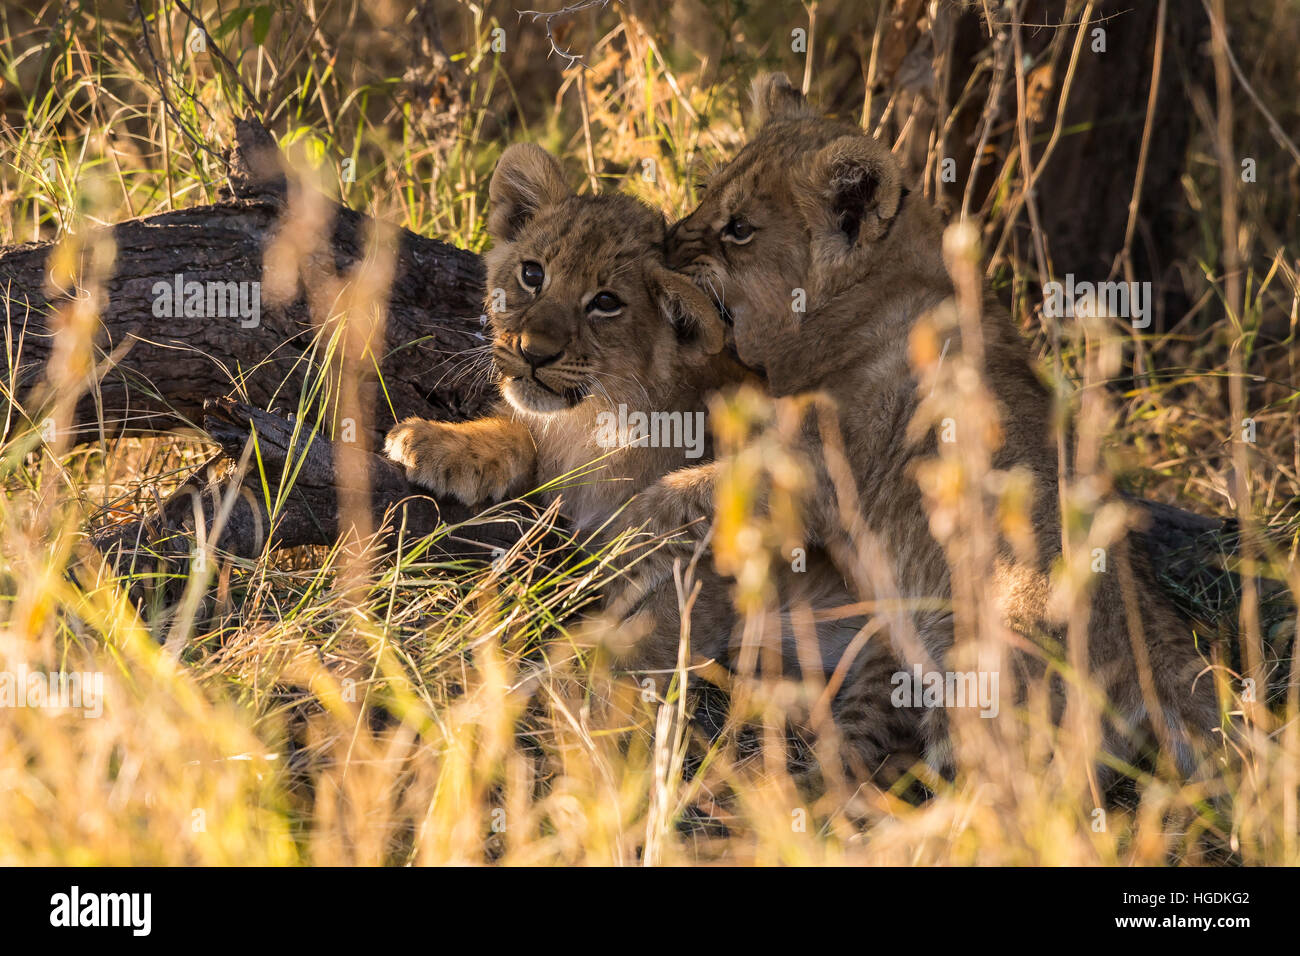 Cachorros de León (Panthera leo) jugando, el Parque Nacional Chobe, Botswana Foto de stock